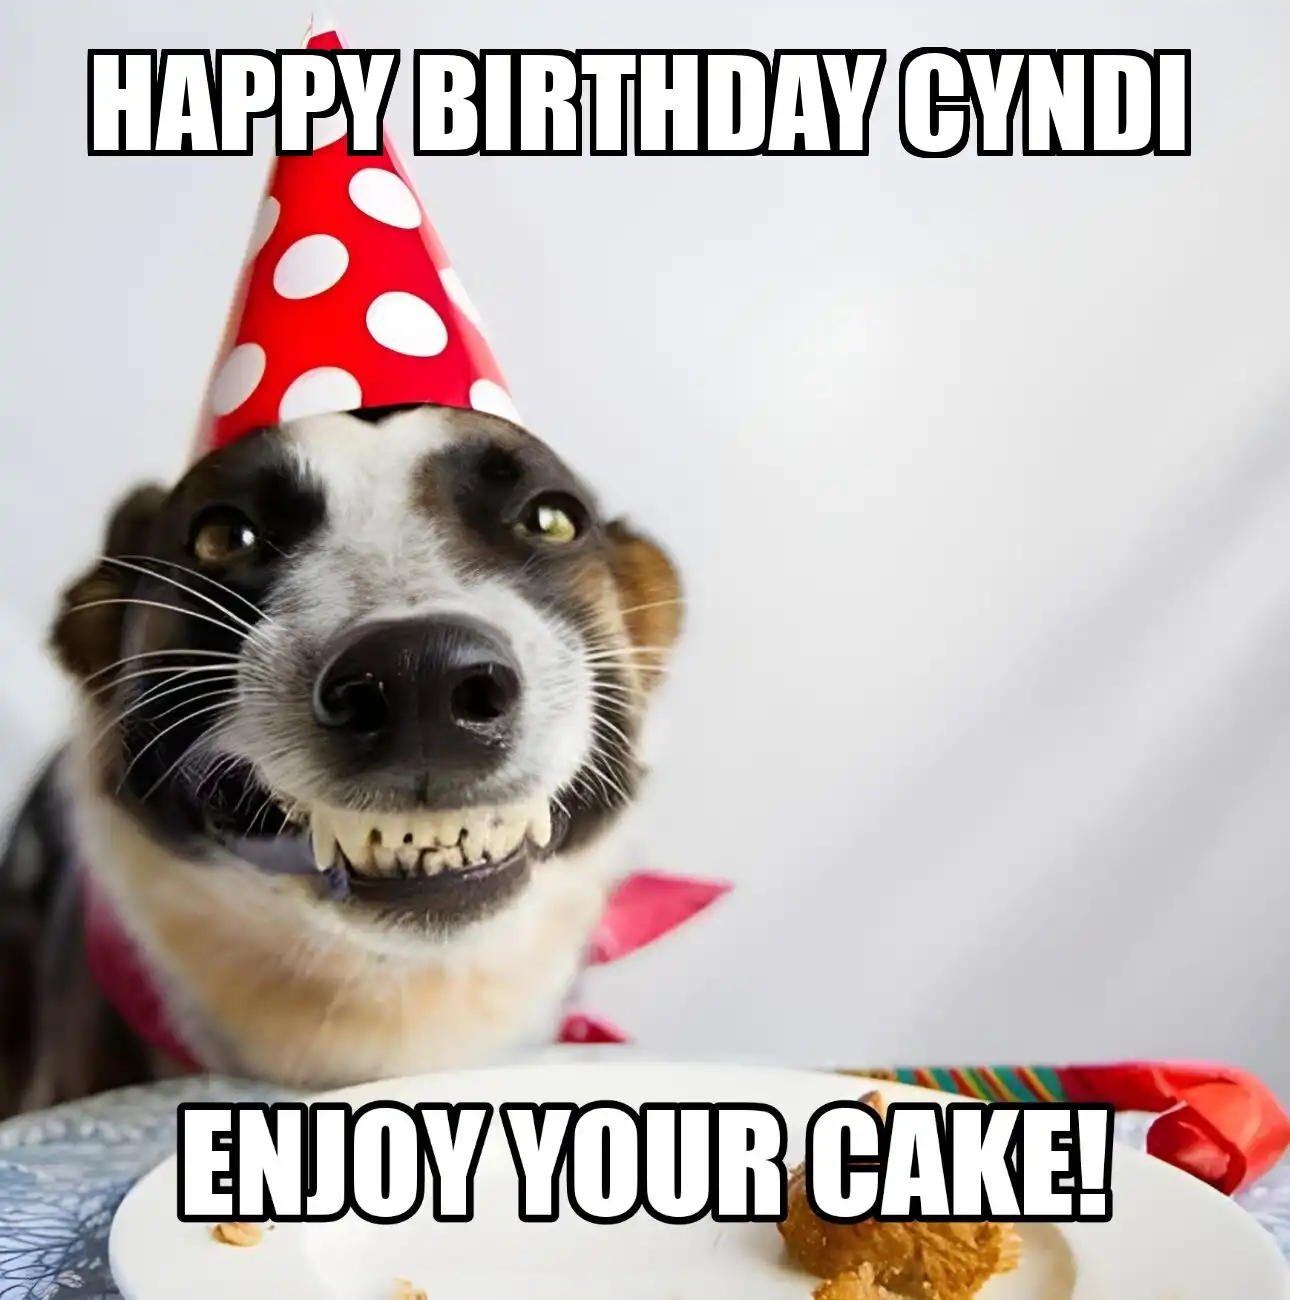 Happy Birthday Cyndi Enjoy Your Cake Dog Meme